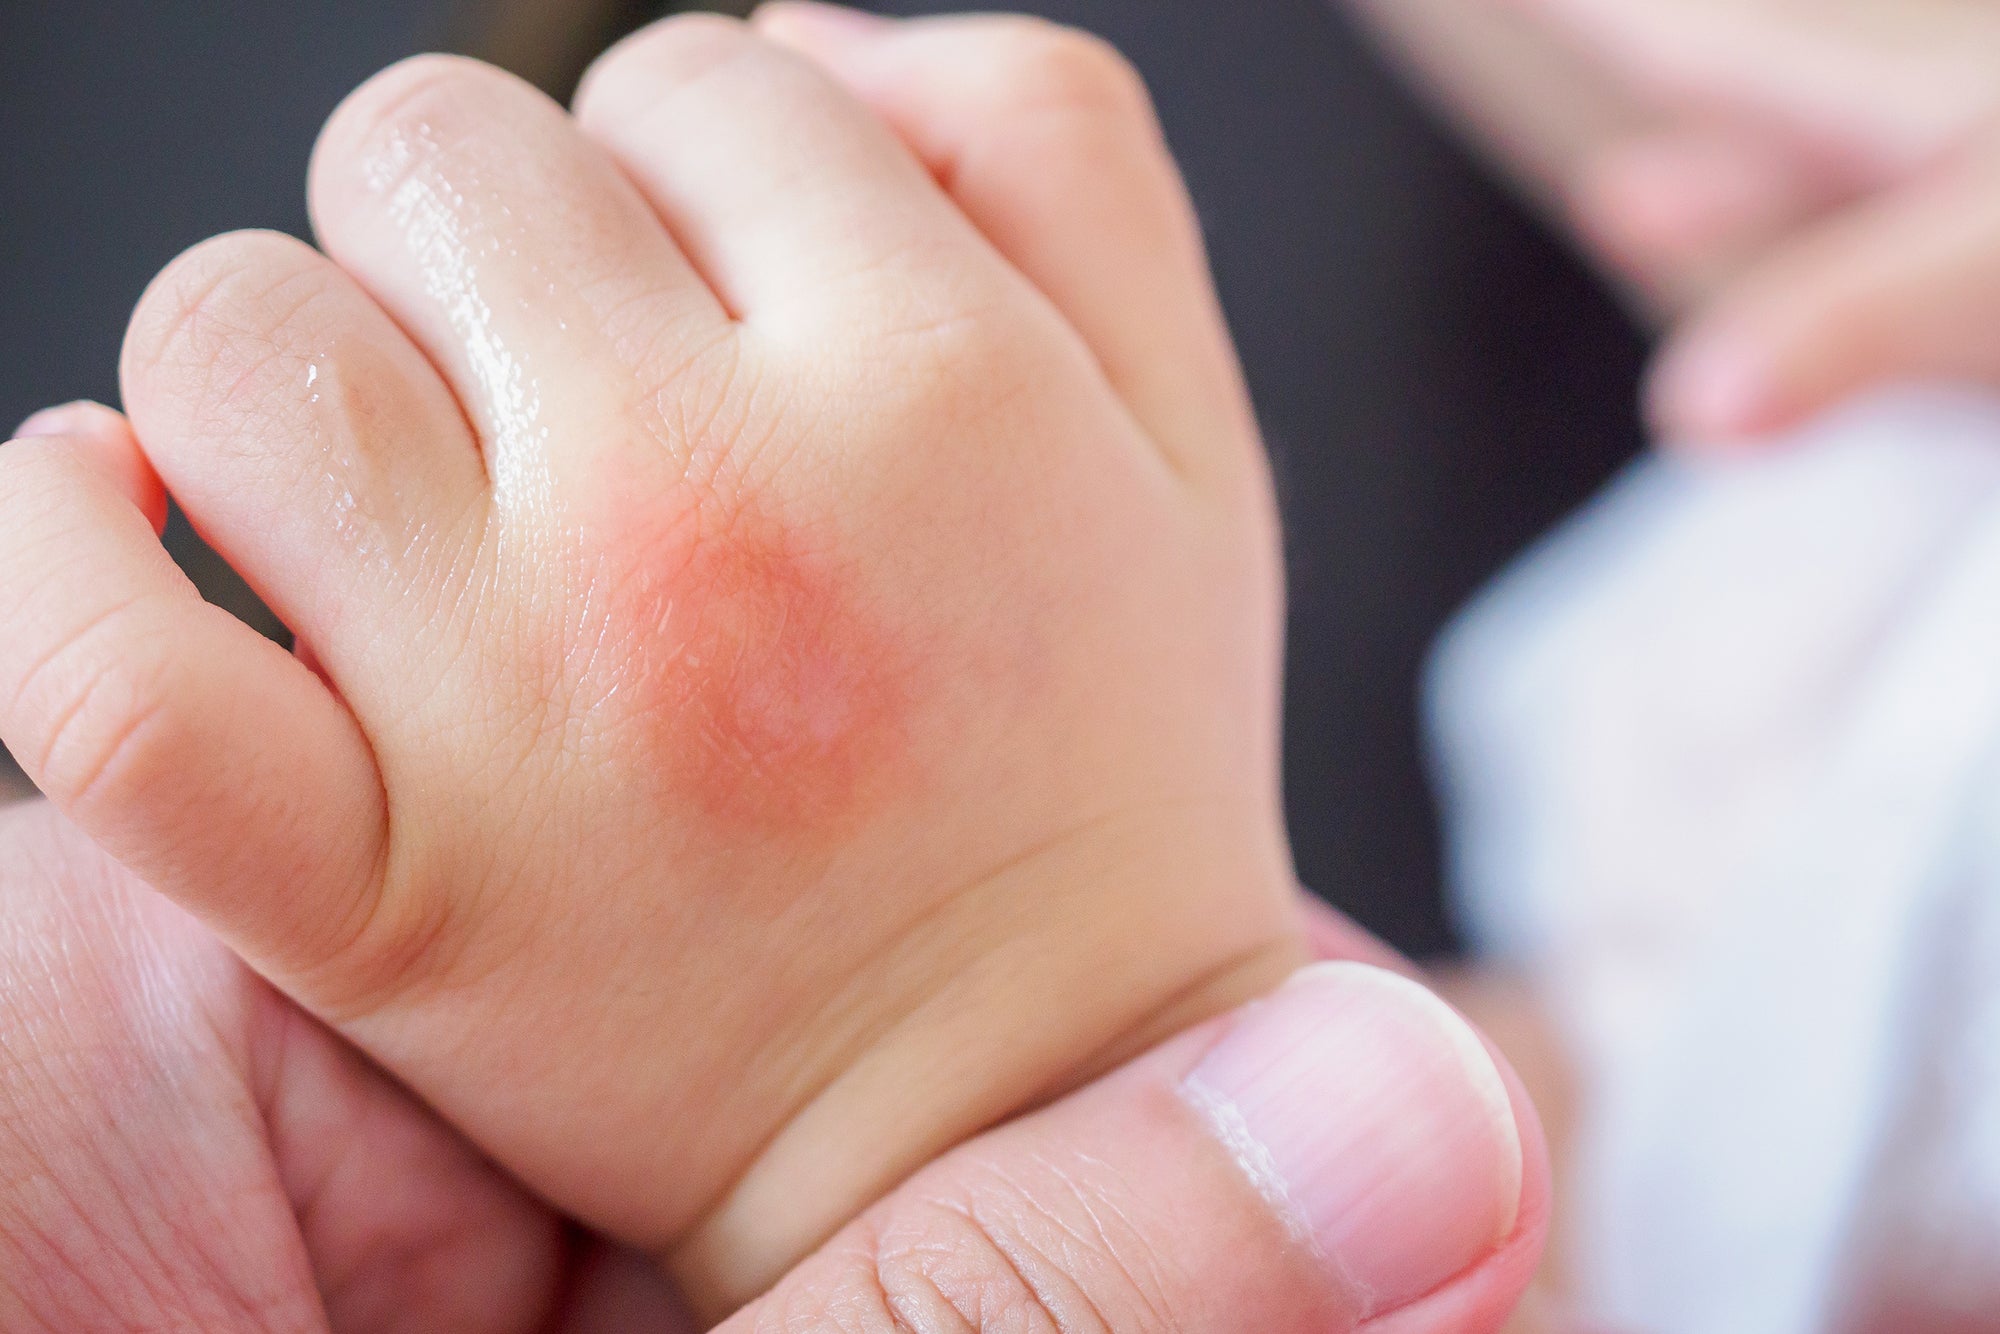 Baby Eczema on Infant Hand